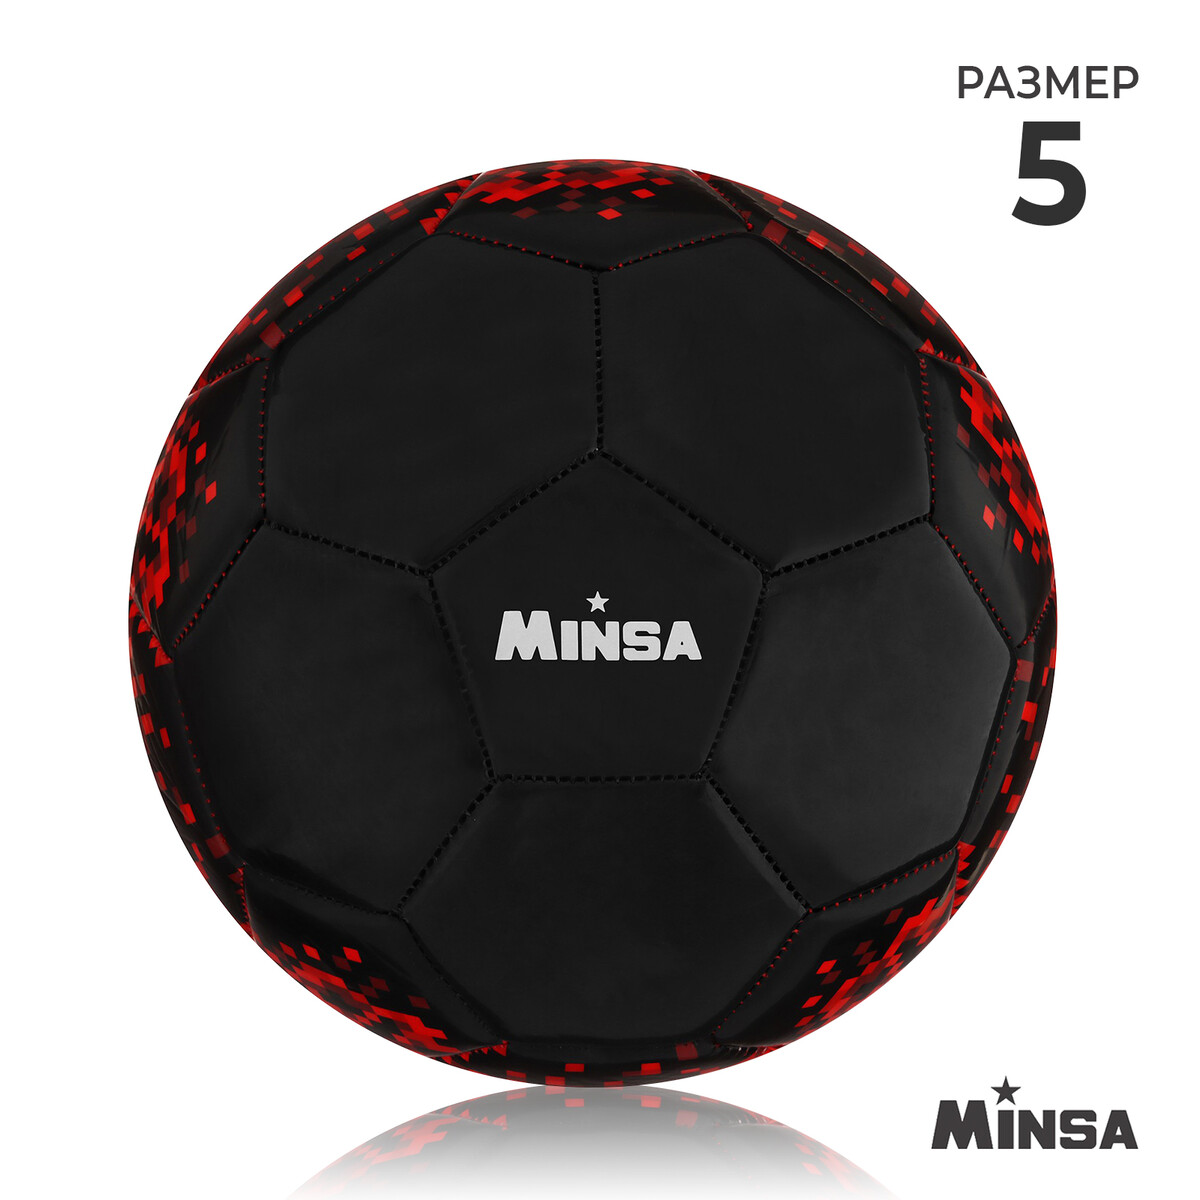 Мяч футбольный minsa, pu, машинная сшивка, 32 панели, р. 5 мяч футбольный minsa classic пвх машинна сшивка 32 панели р 5